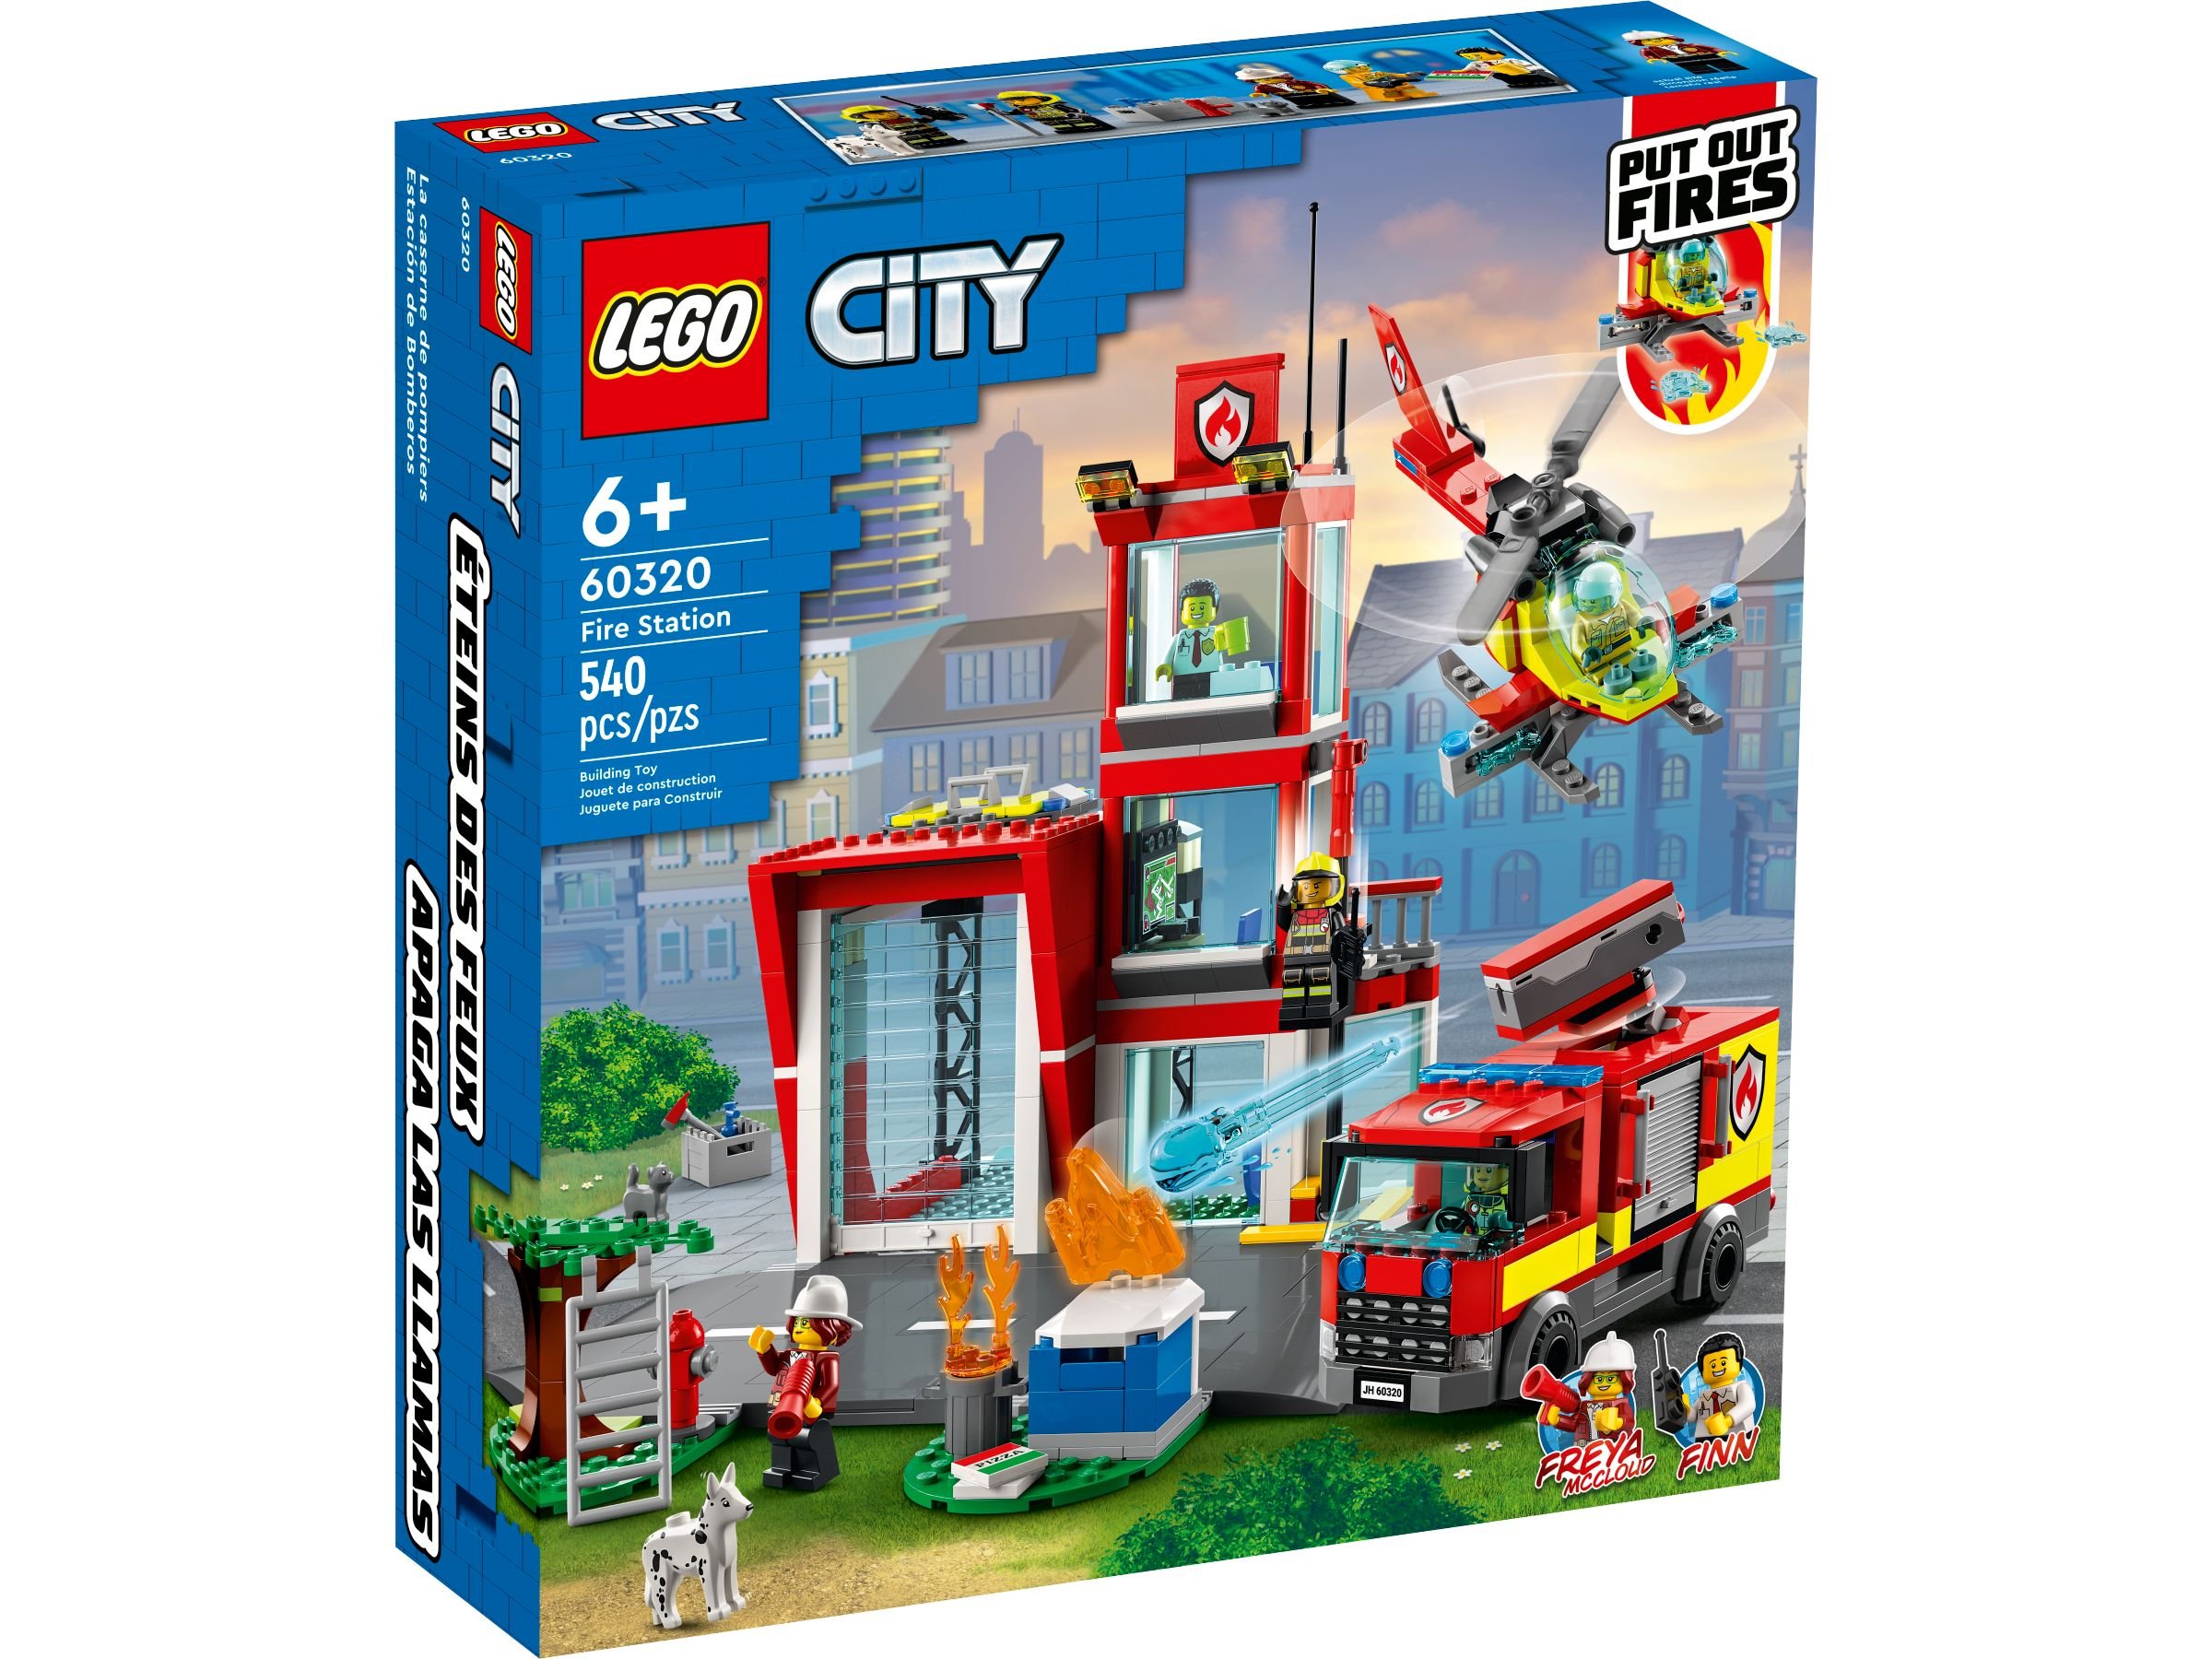 LEGO City 60320 Feuerwache LEGO_60320_alt1.jpg